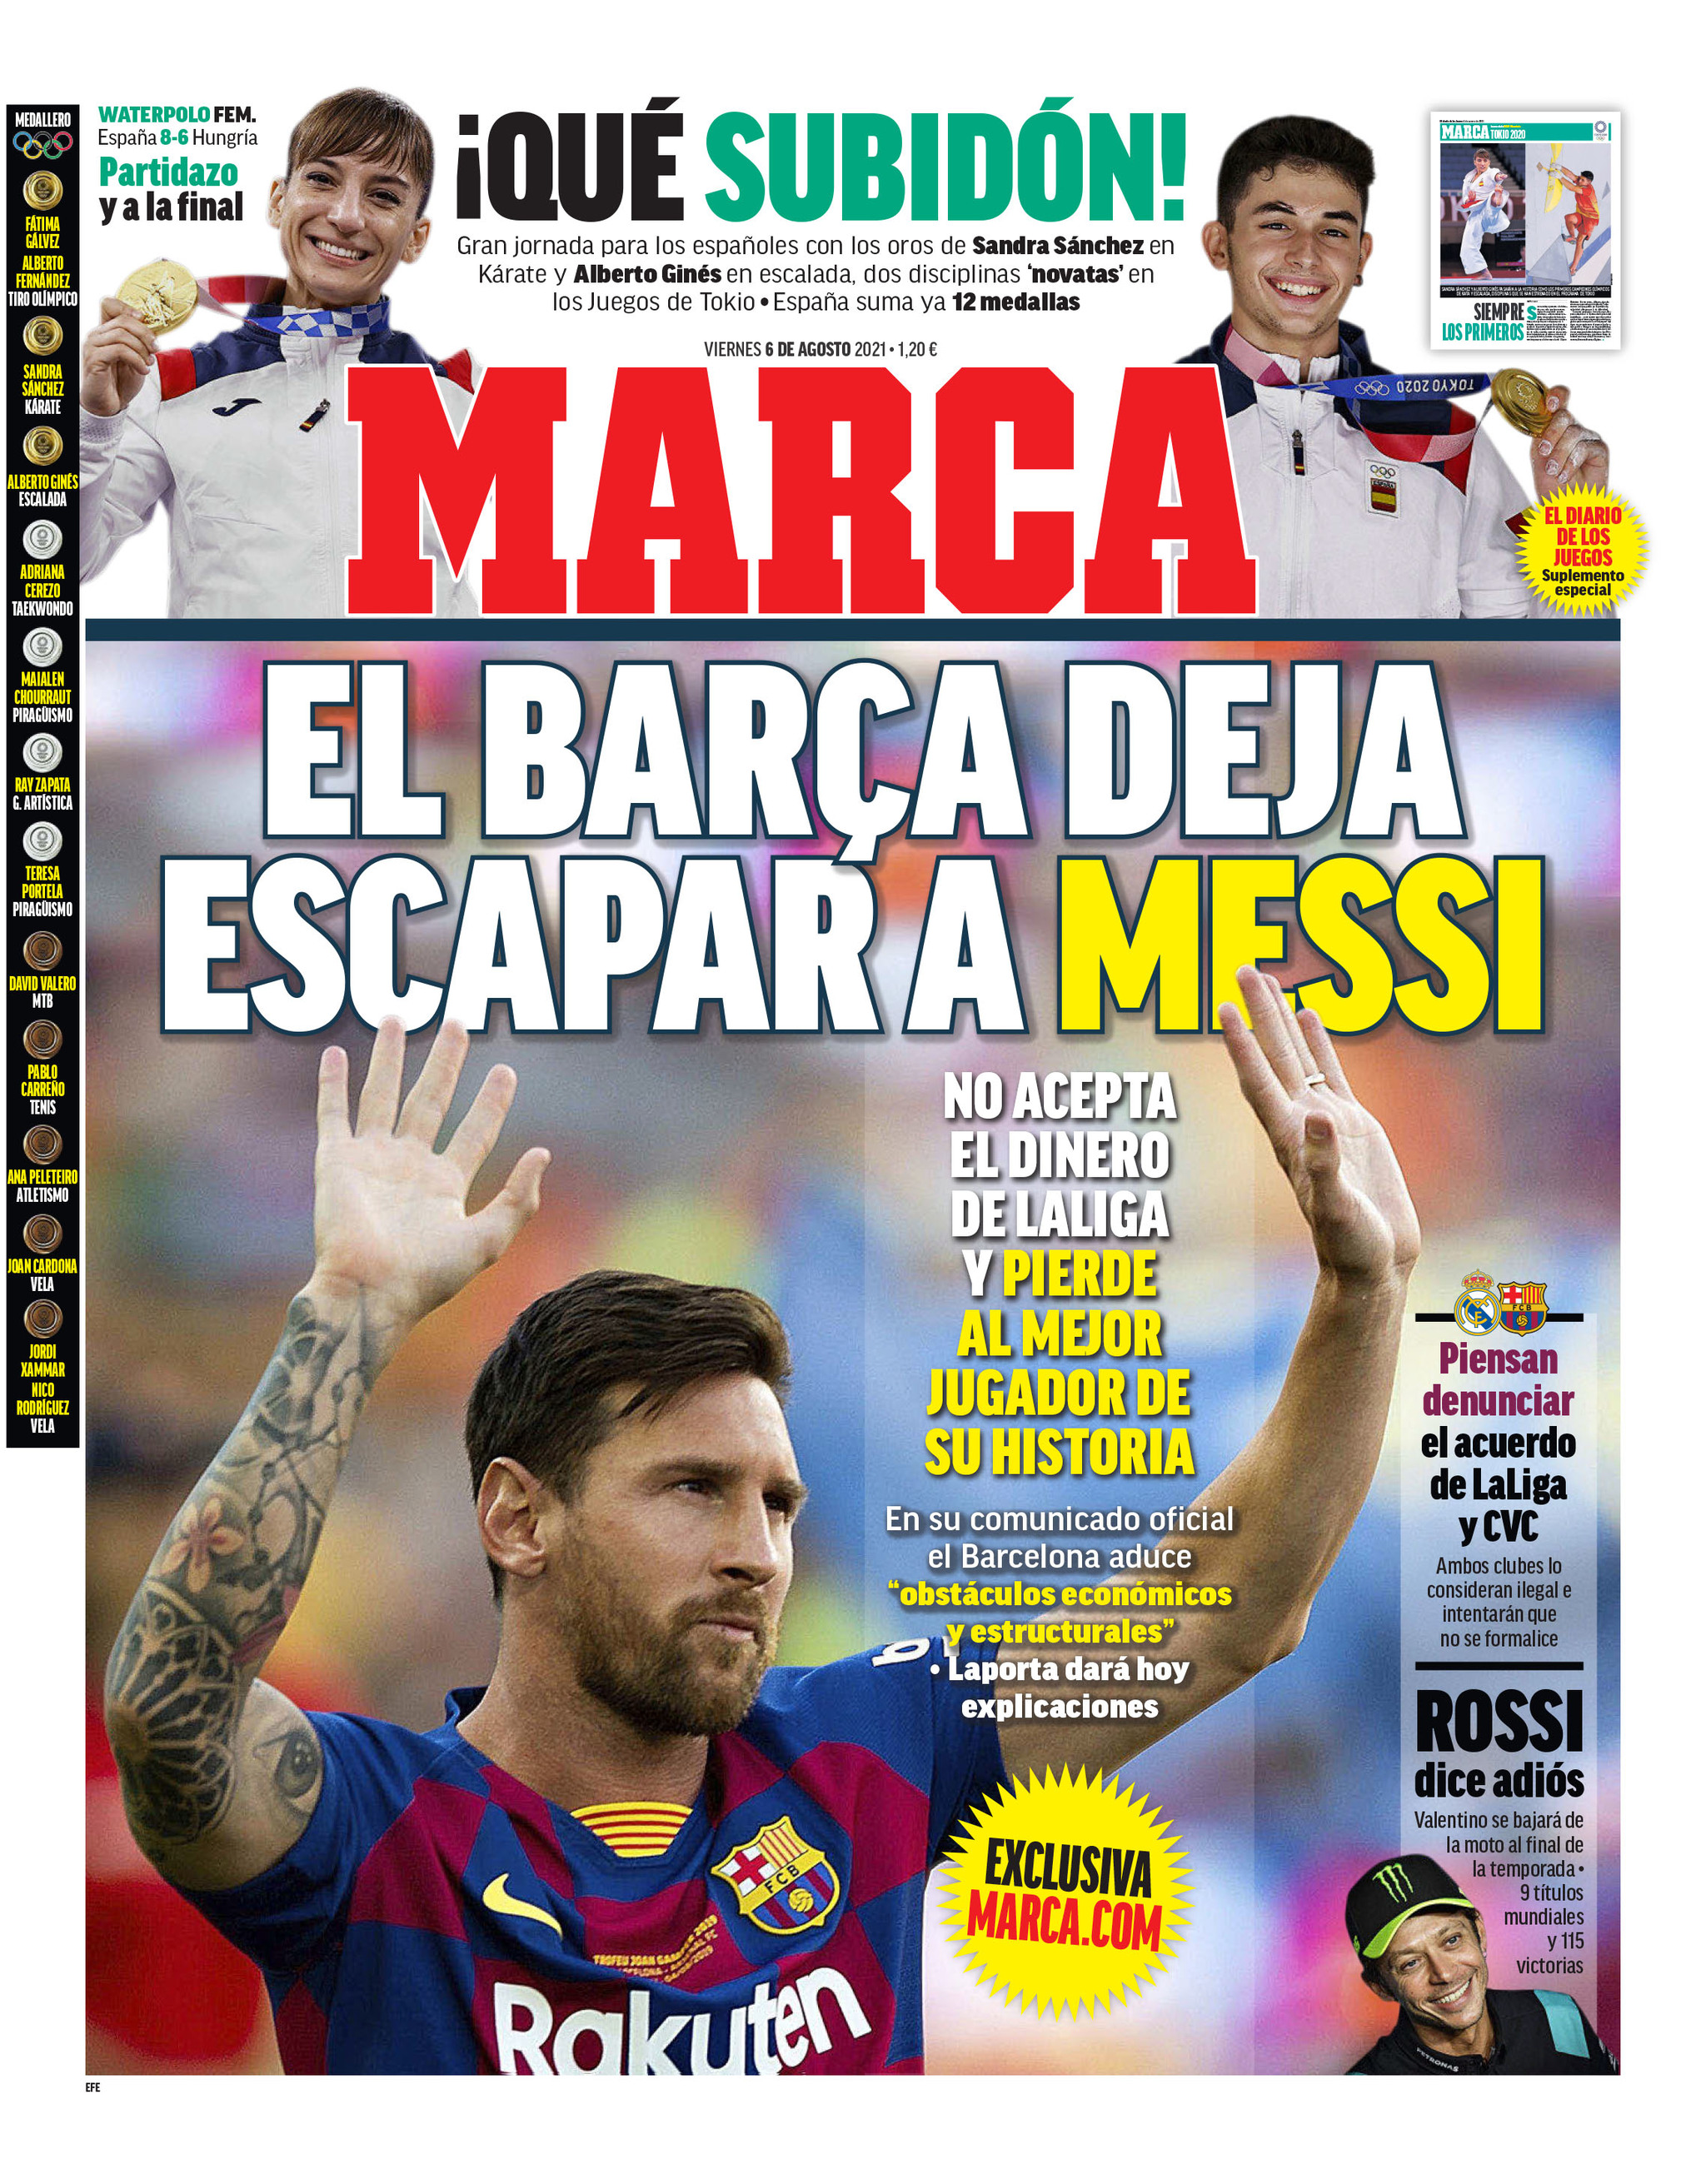 Messi hoy: Messi sale del Barcelona: Resumen noticias y reacciones del club tras el adiós de La Pulga | MARCA Claro Colombia